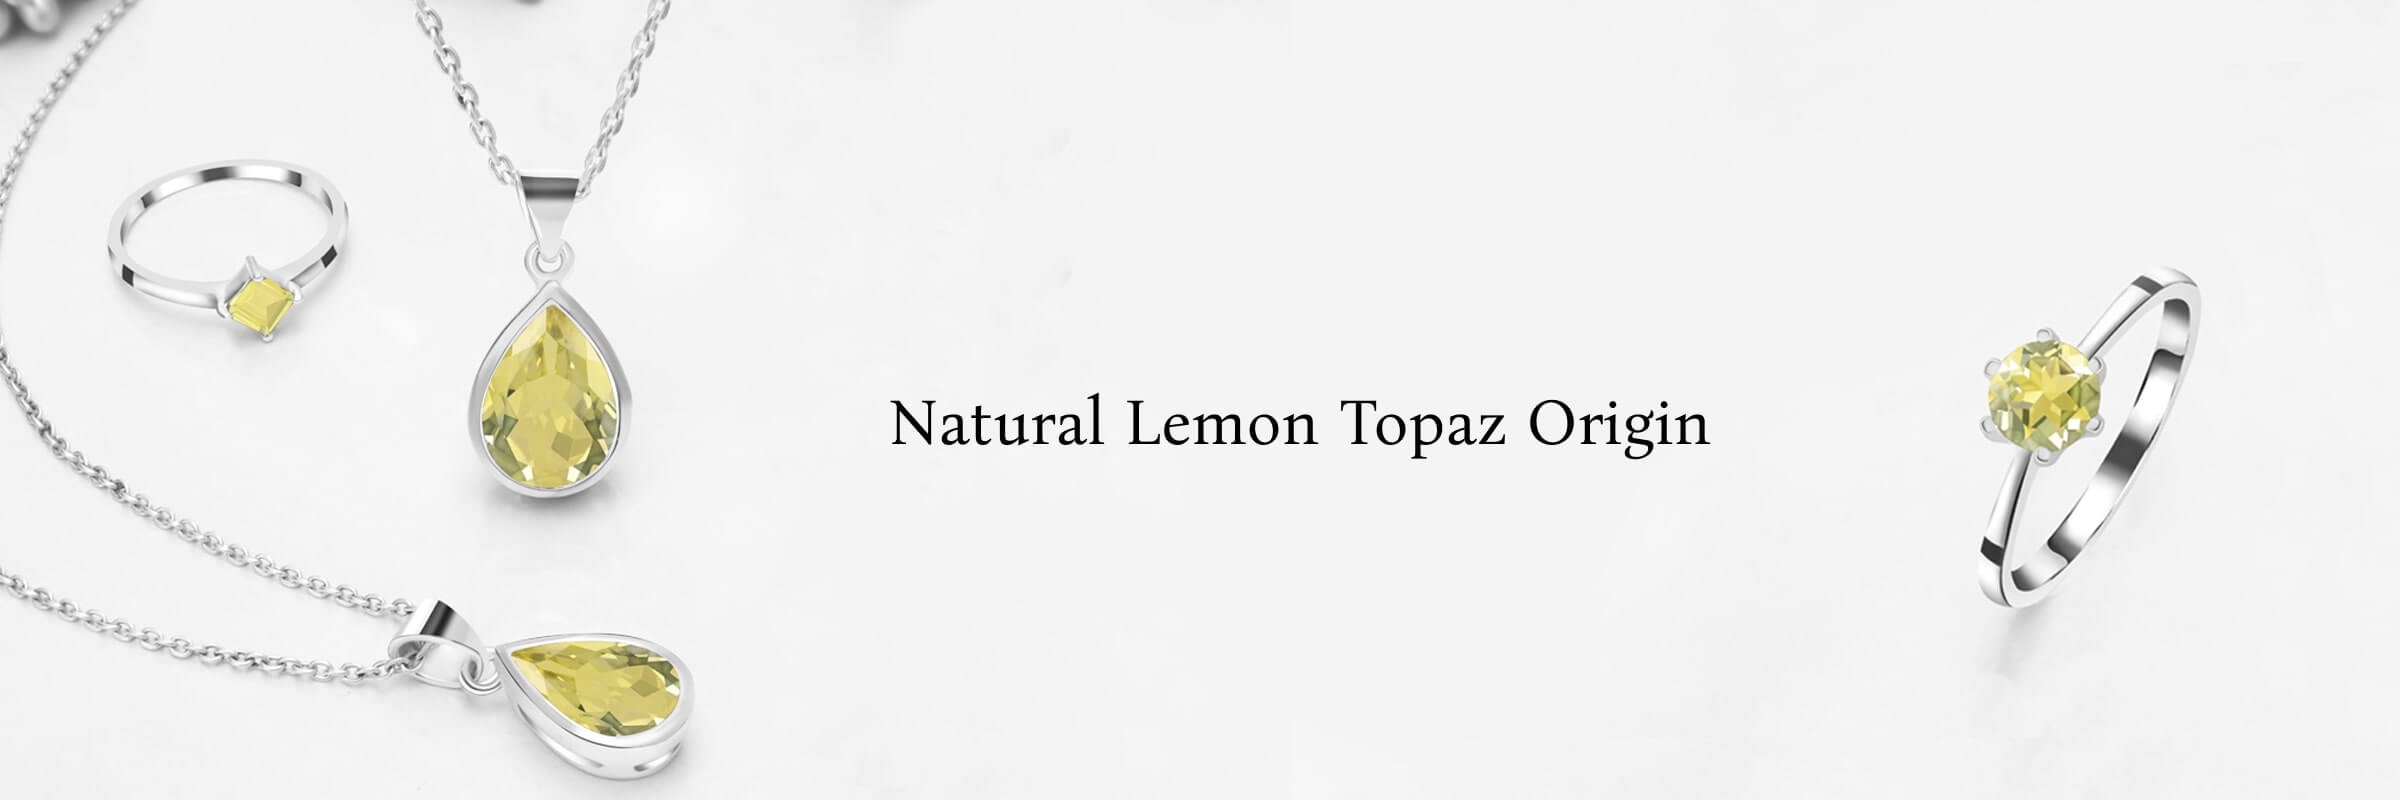 Origin of Lemon Topaz